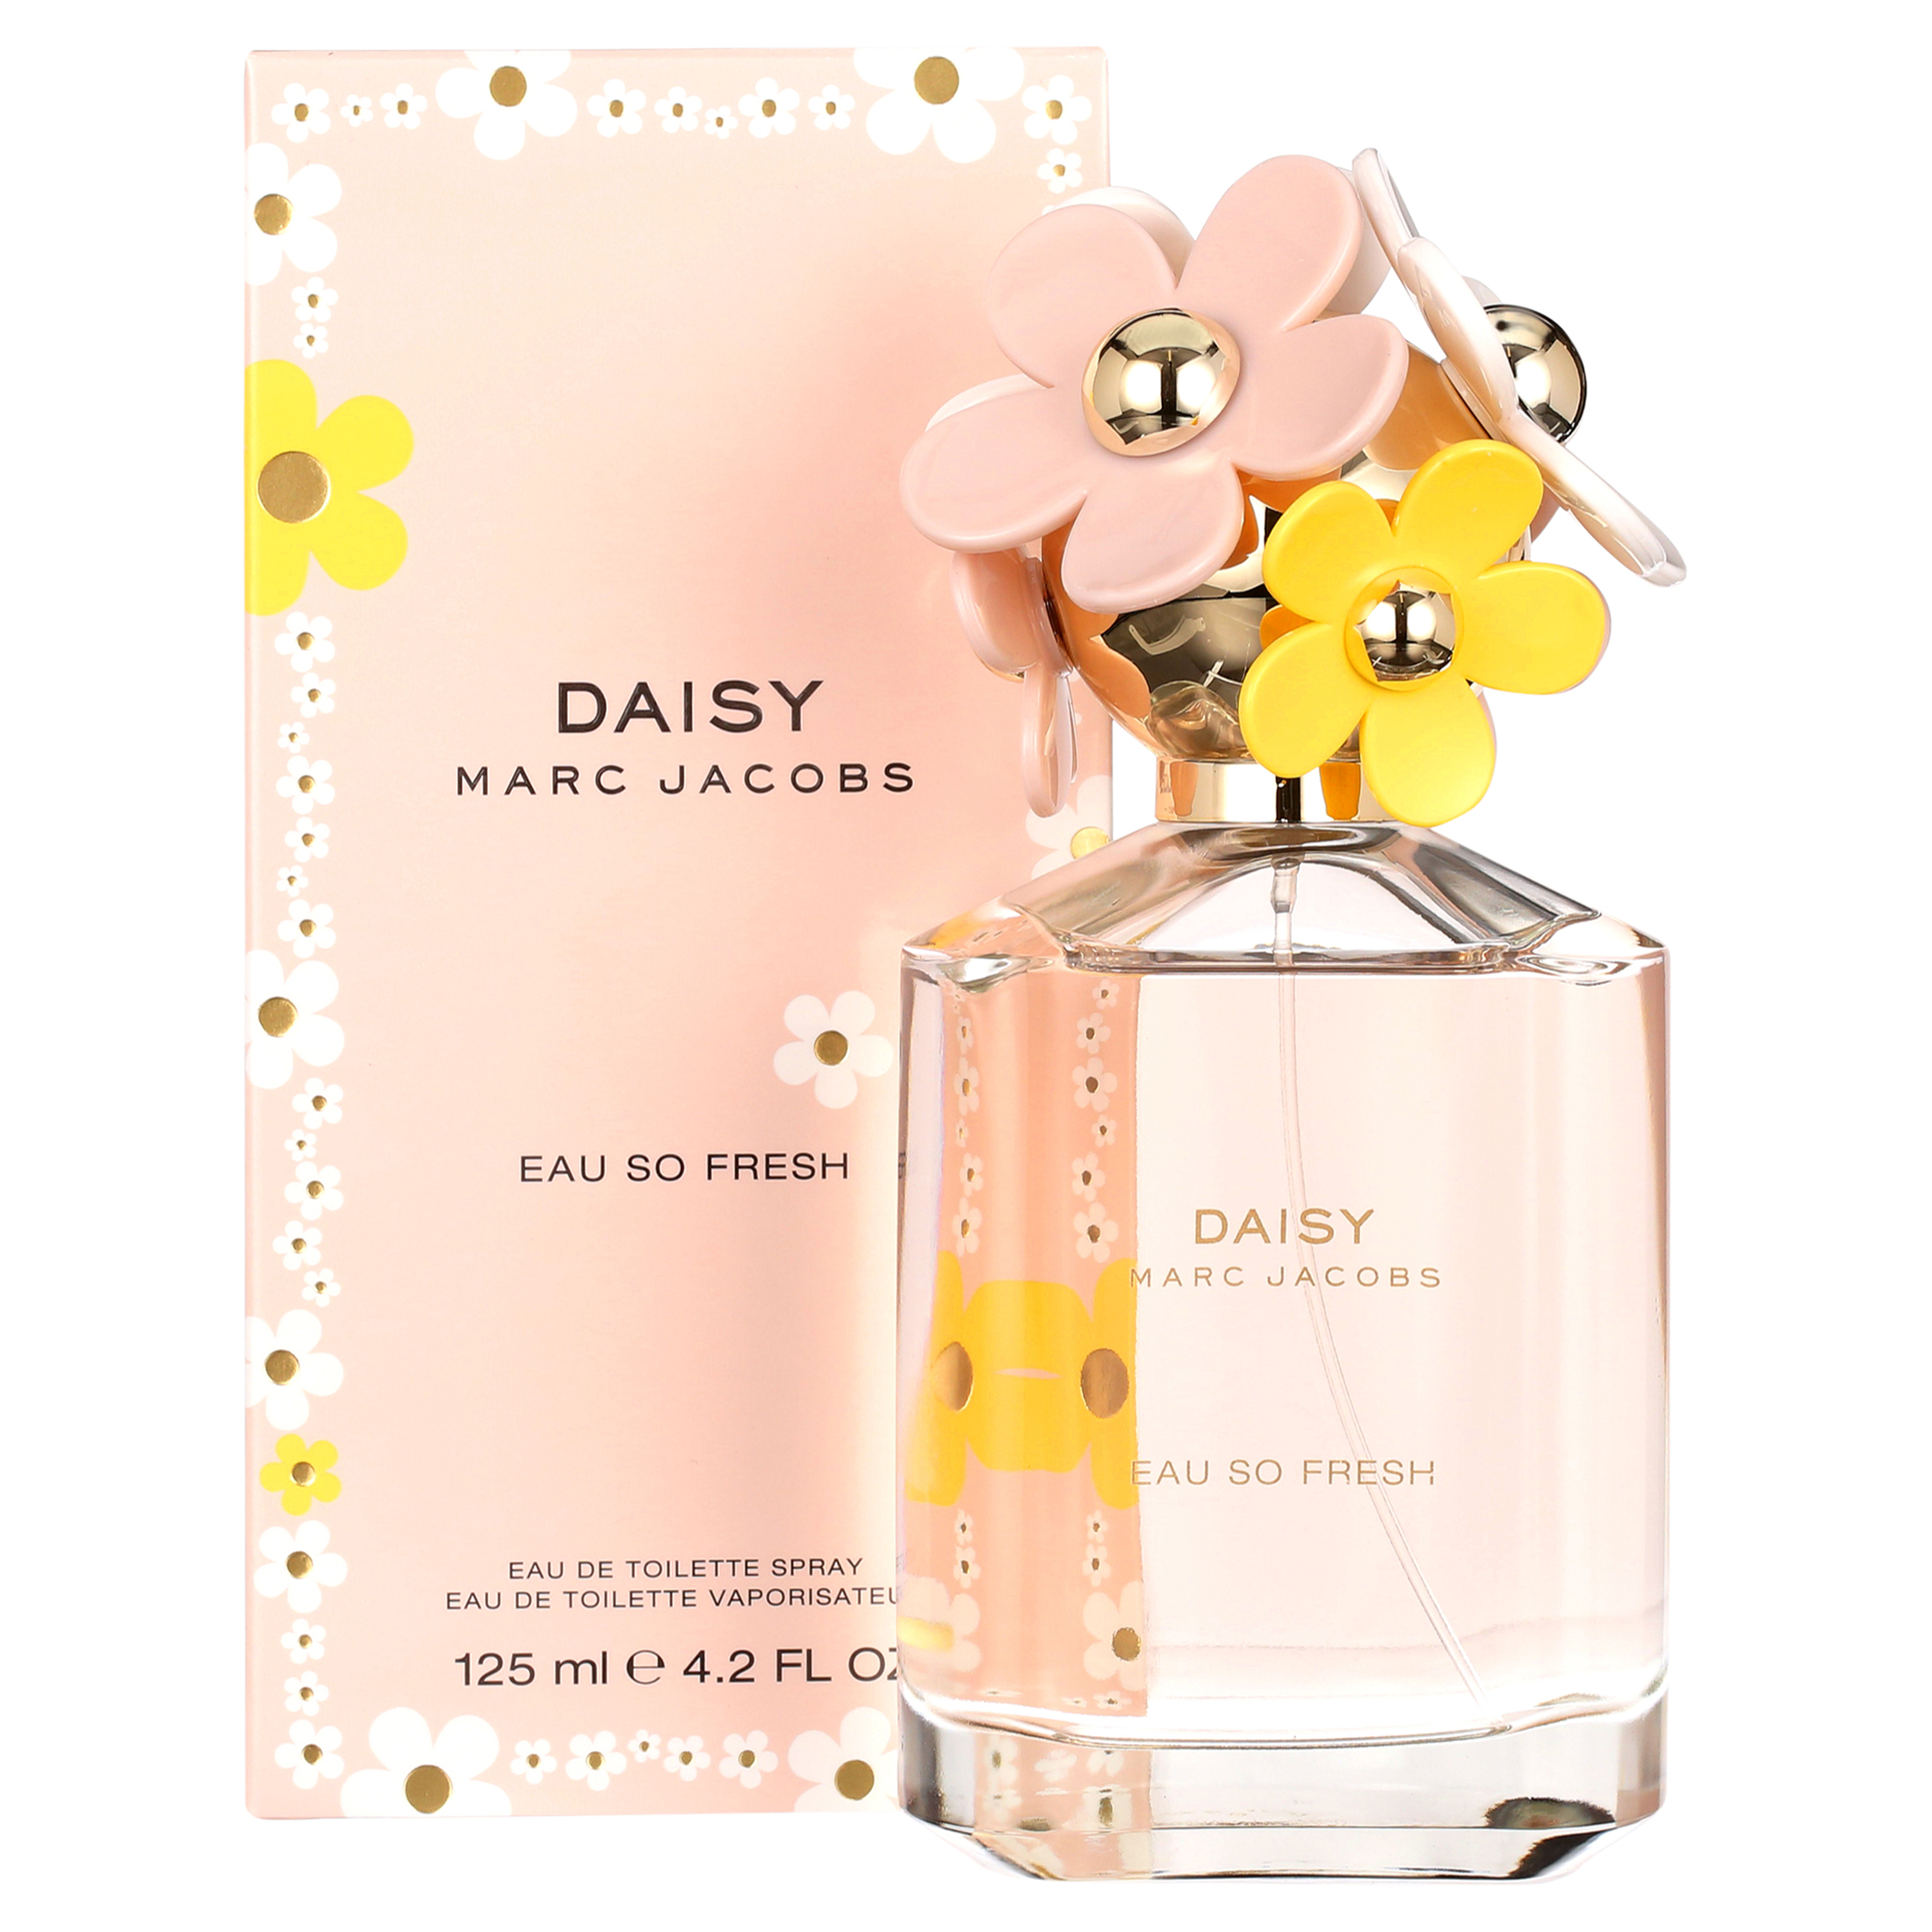 Marc Jacobs Daisy Eau So Fresh Eau de Toilette, Perfume for Women, 4.2 oz - image 1 of 5